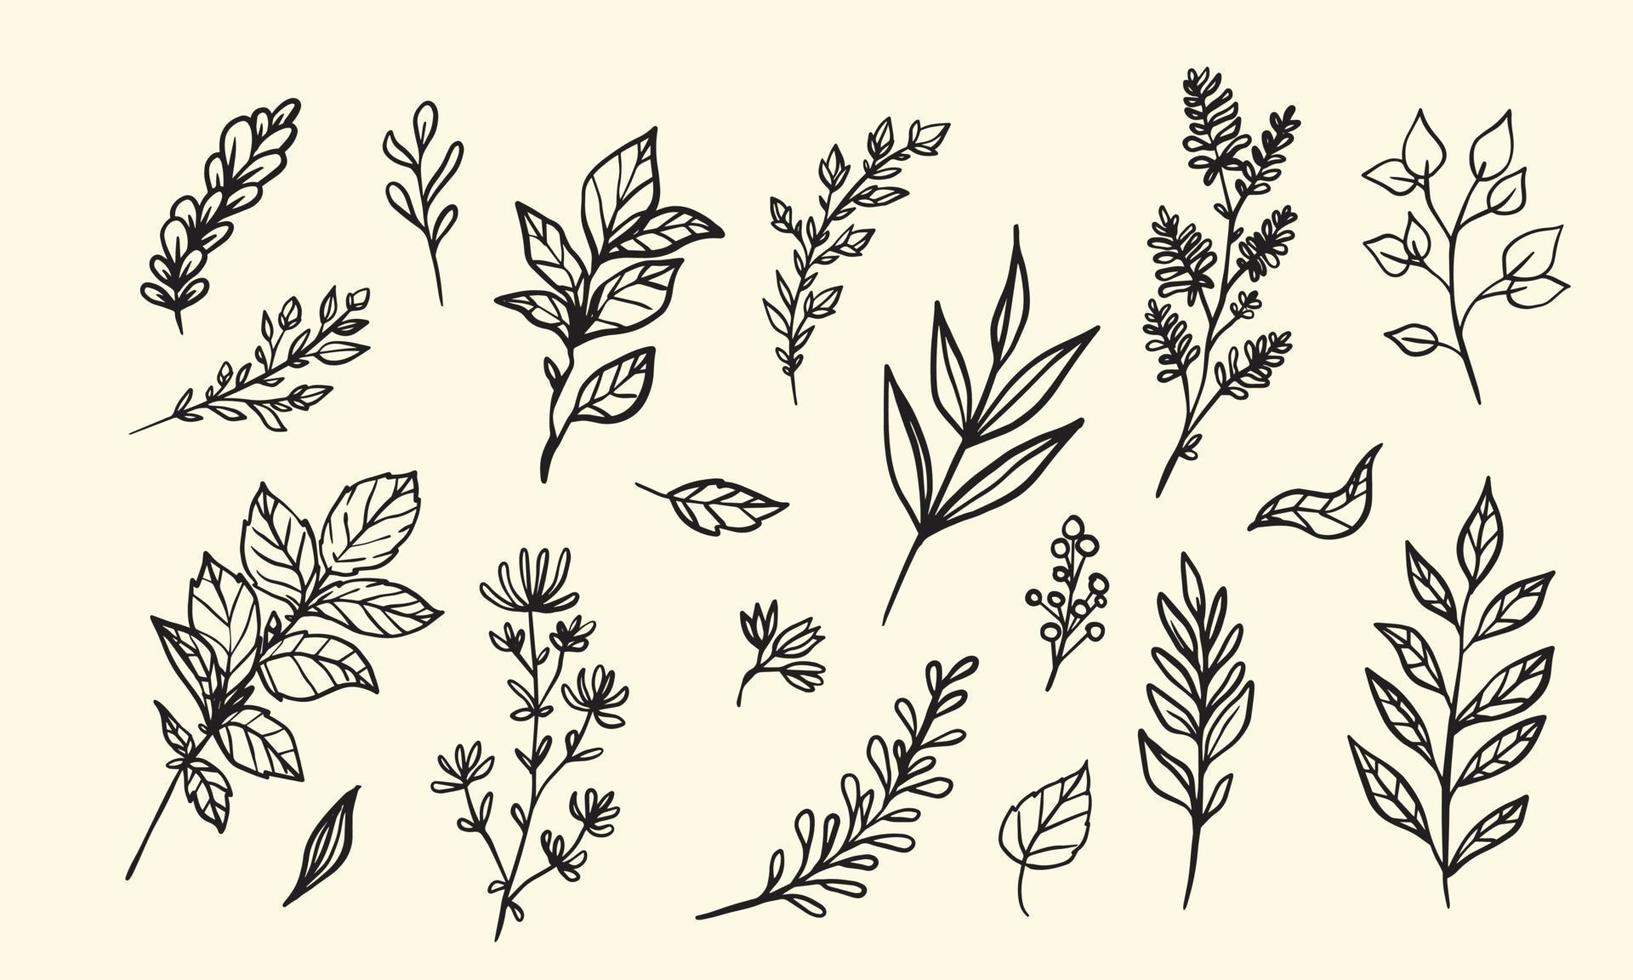 conjunto de ilustración de vector de hoja dibujada a mano, elementos gráficos aislados lineart de flores para su diseño, lineart floral para diseño clásico